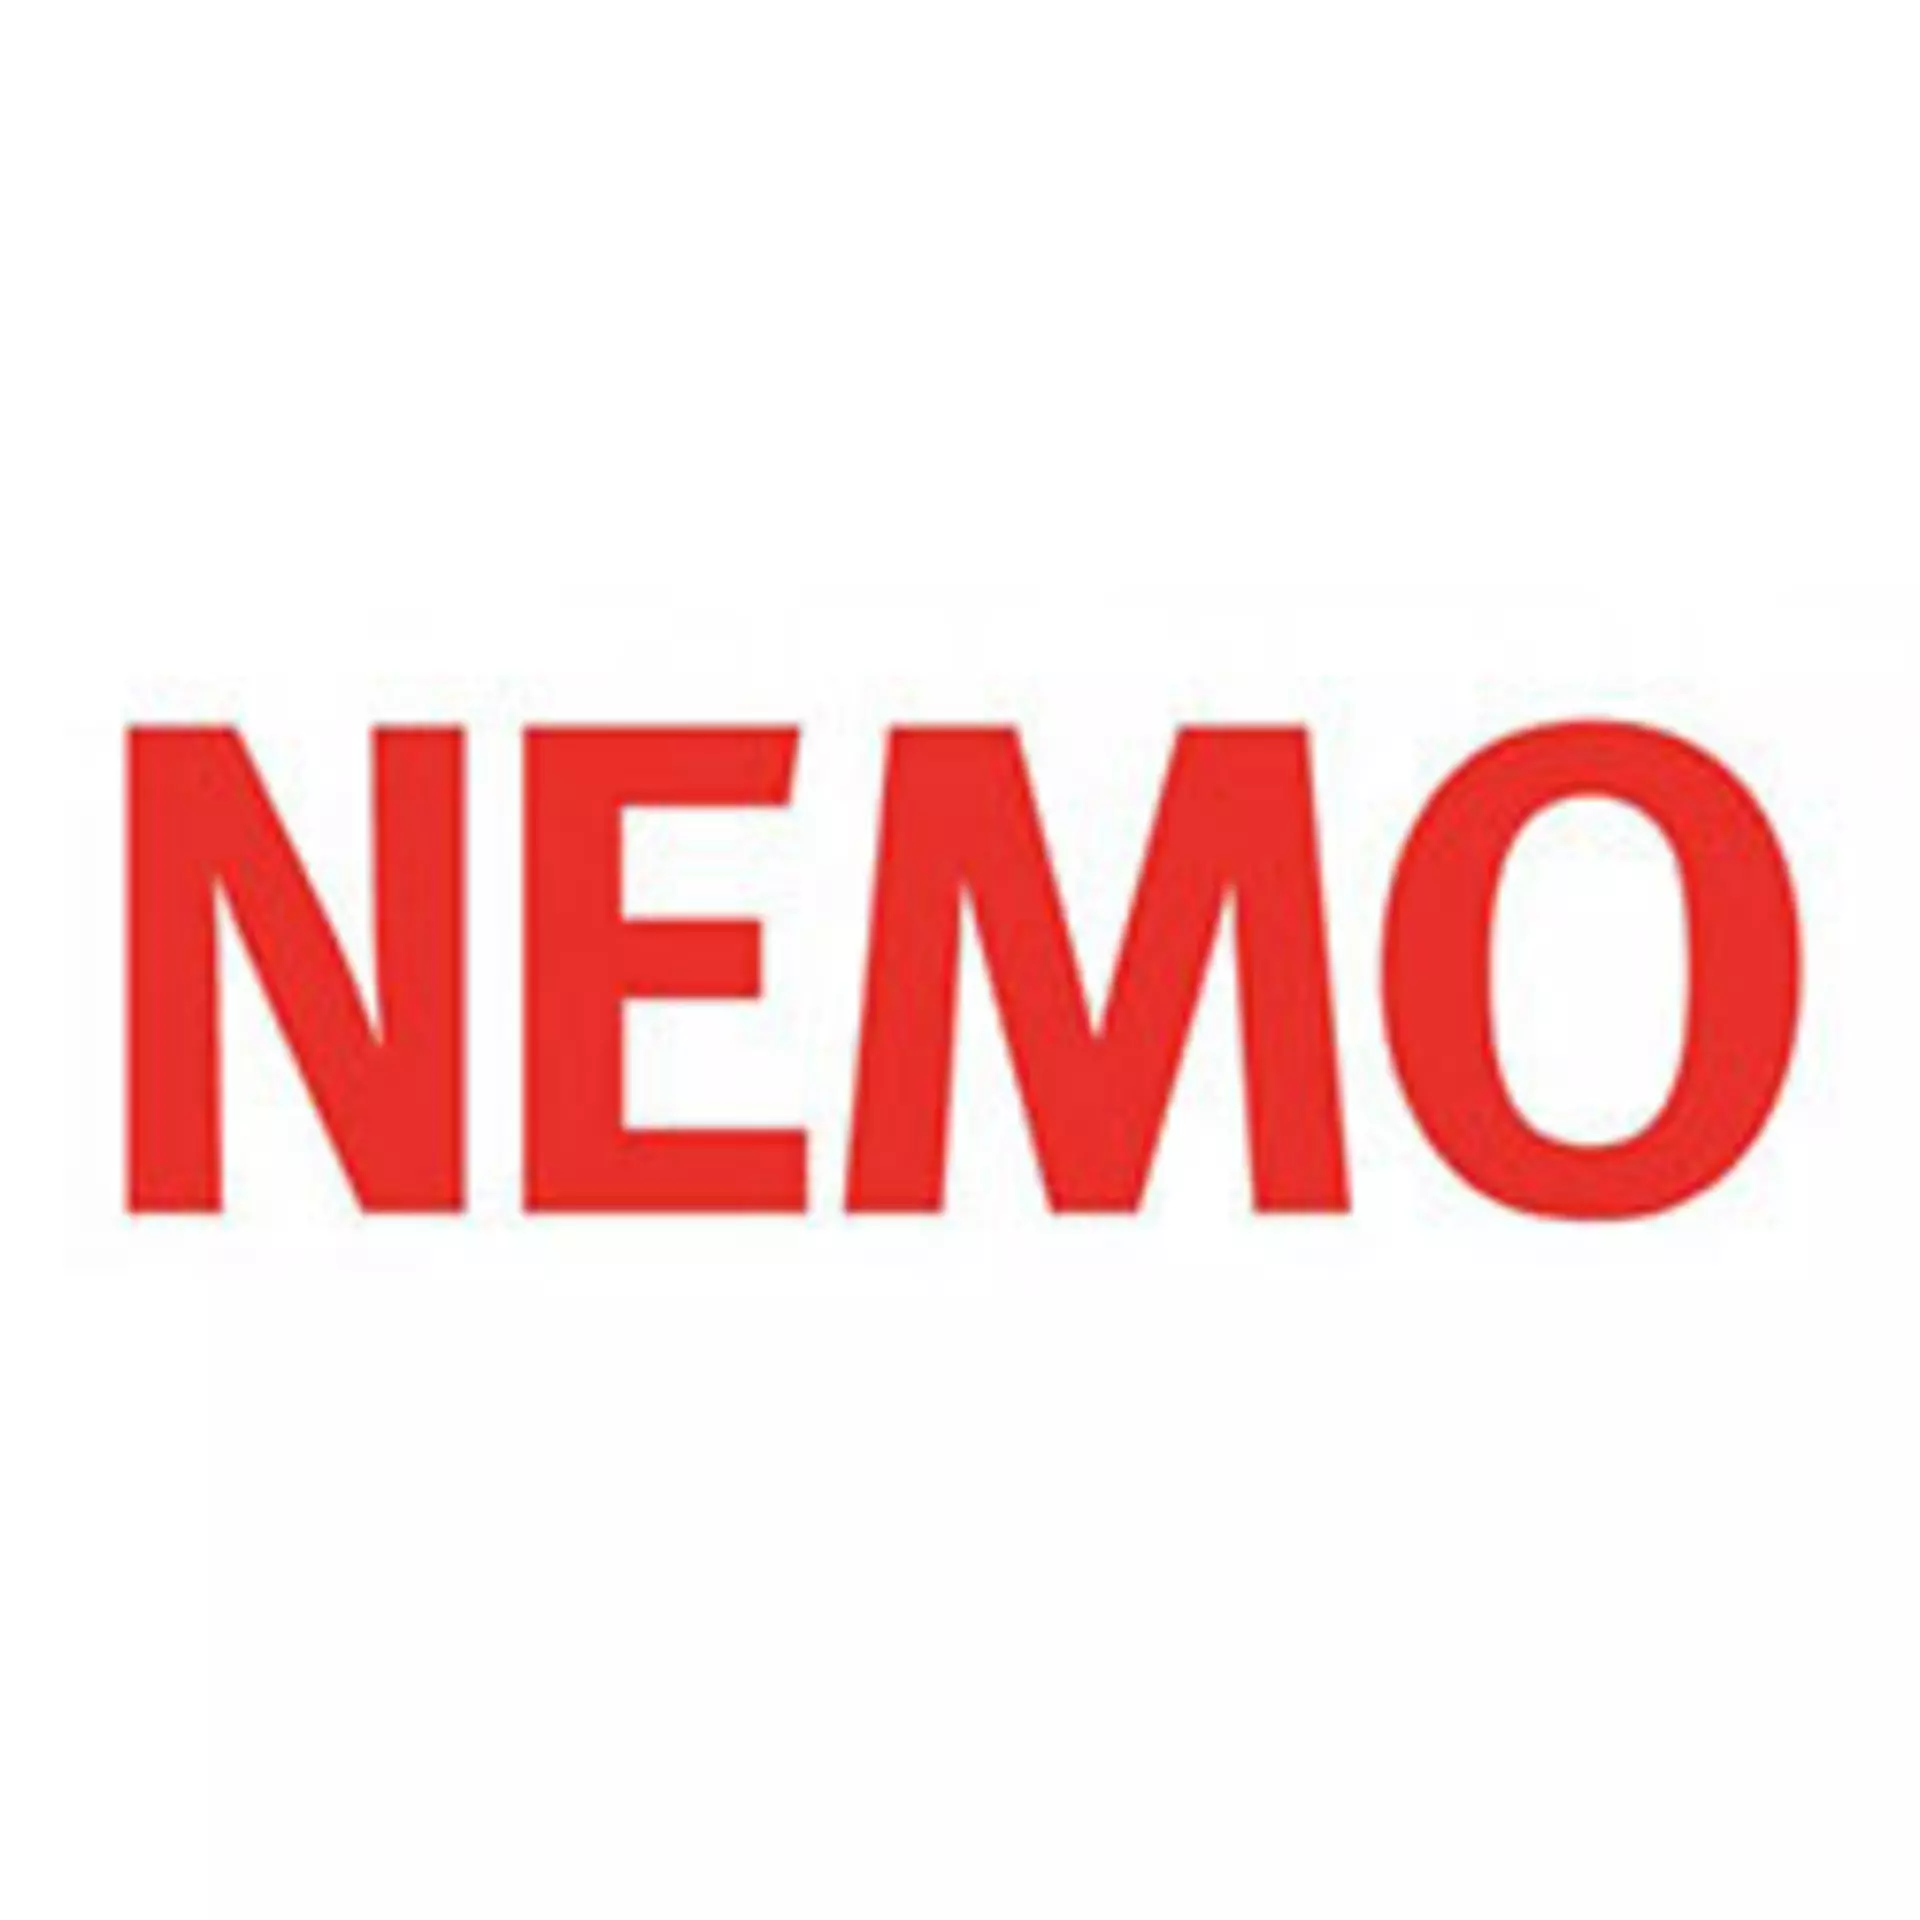 Logo NEMO